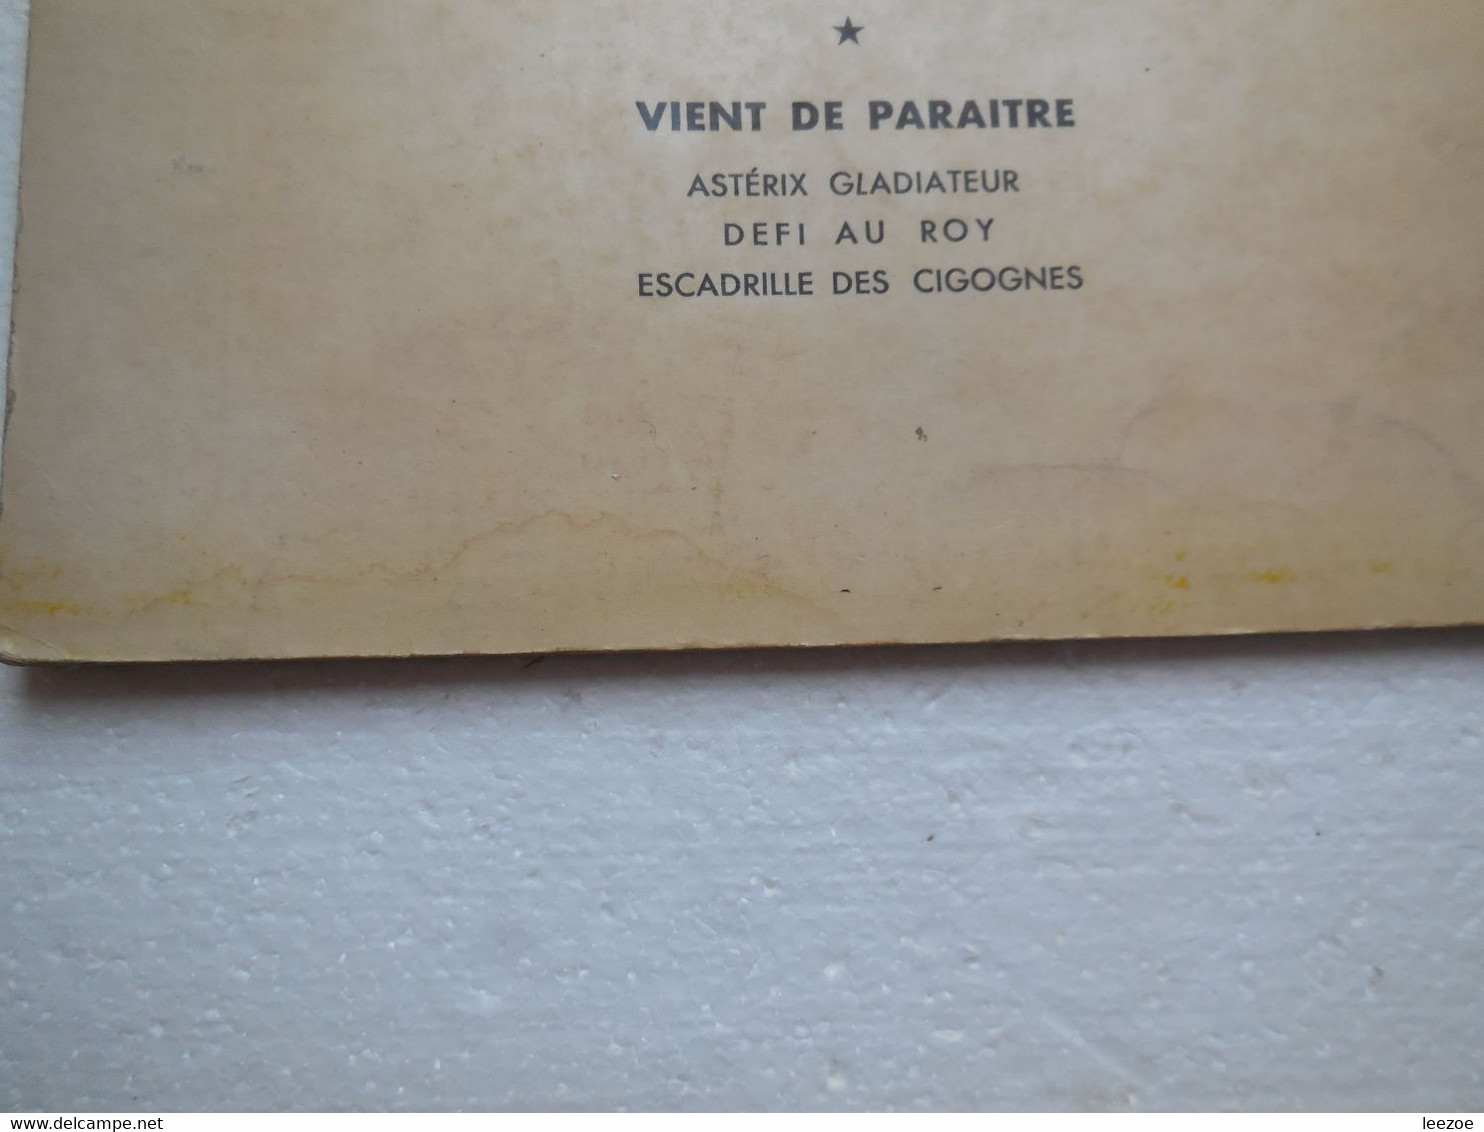 EO BD Collection Pilote Tanguy Et Laverdure N°4. Escadrille Des Cigognes 1964, LE LOMBARD (peu Commun).......N5.04.08 - Tanguy Et Laverdure